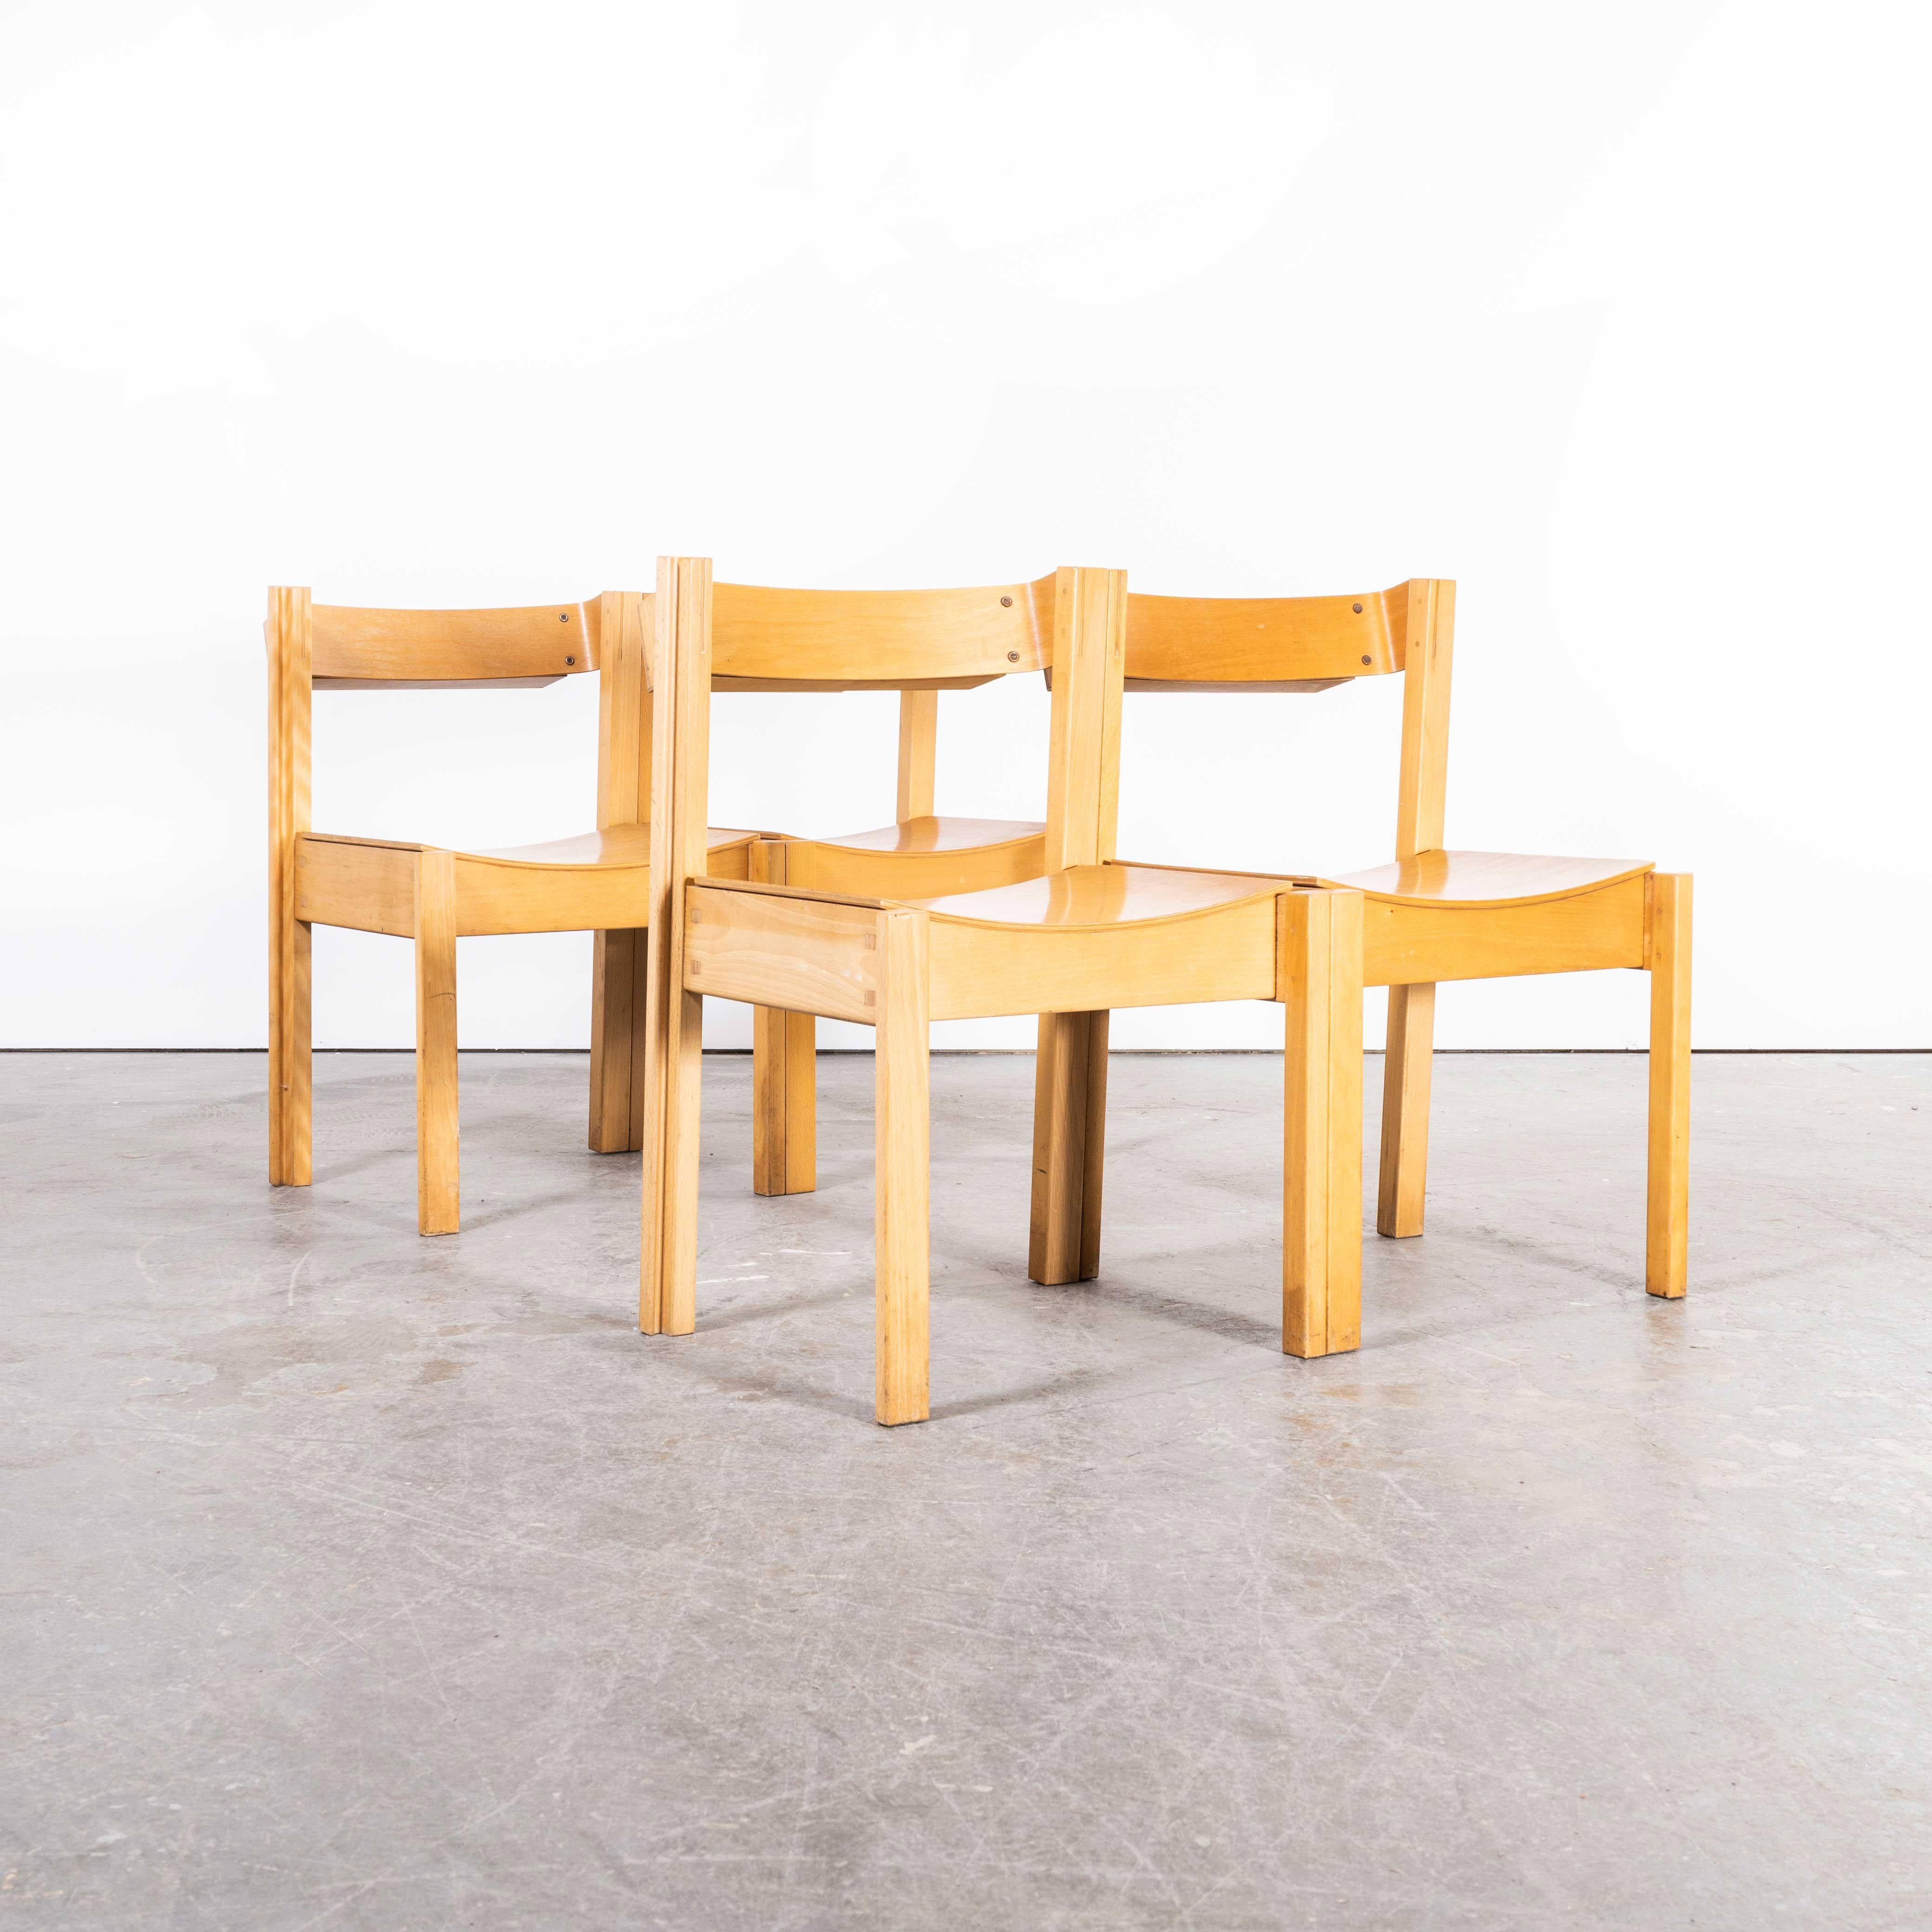 Verkettungs- und Stapelstühle von Clive Bacon aus den 1960er Jahren - Satz von vier Stühlen
Verkettungs- und Stapelstühle von Clive Bacon aus den 1960er Jahren - Satz von vier Stühlen. Das geniale Design der Bacon-Beine ermöglicht es, die Stühle zu